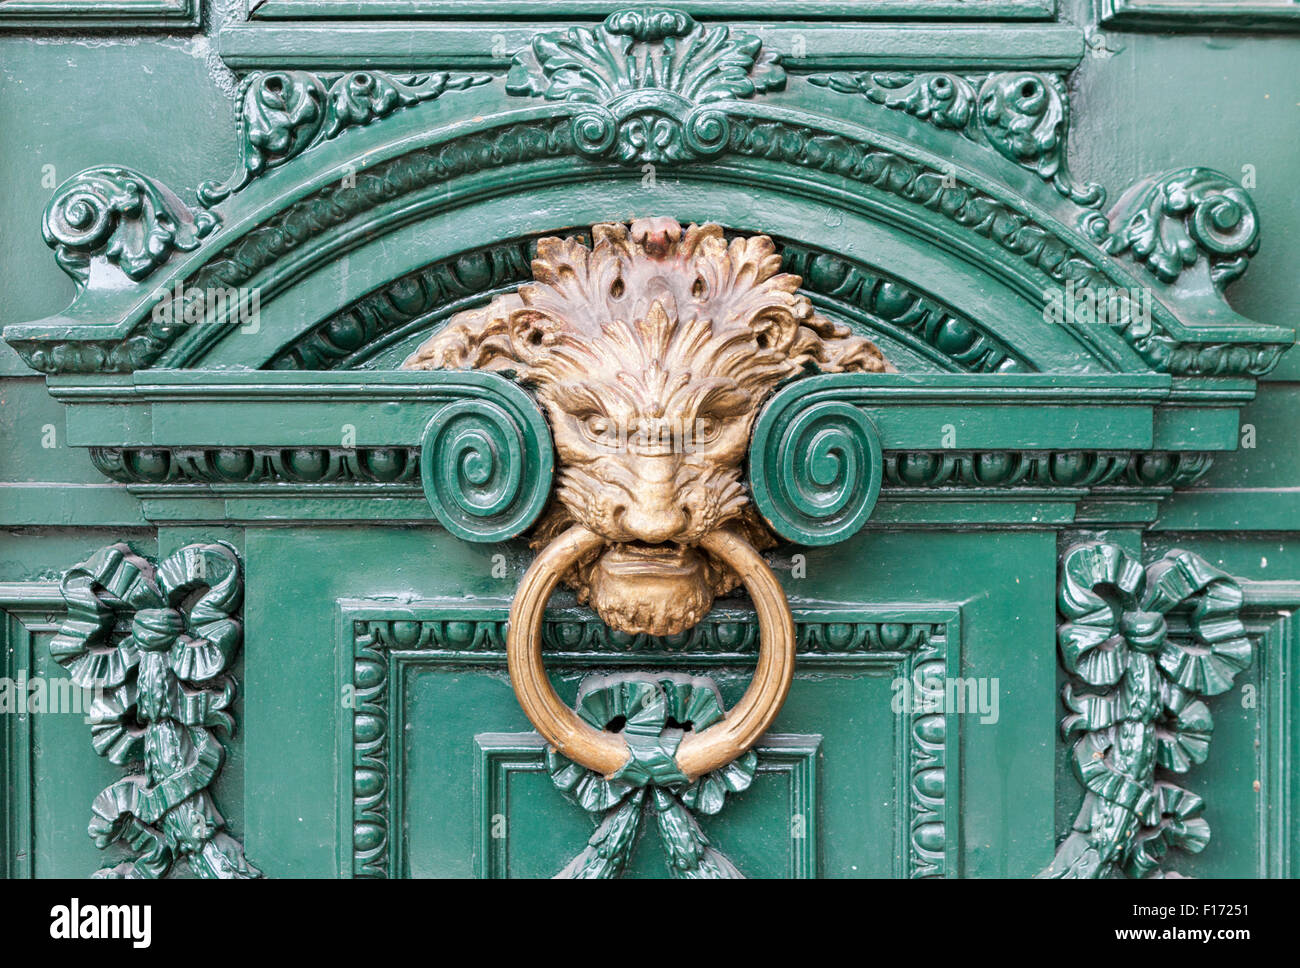 Lion heurtoir et décorations baroques sur la porte près de l'Avenue Florida et Diagonal Norte à Buenos Aires, Argentine Banque D'Images